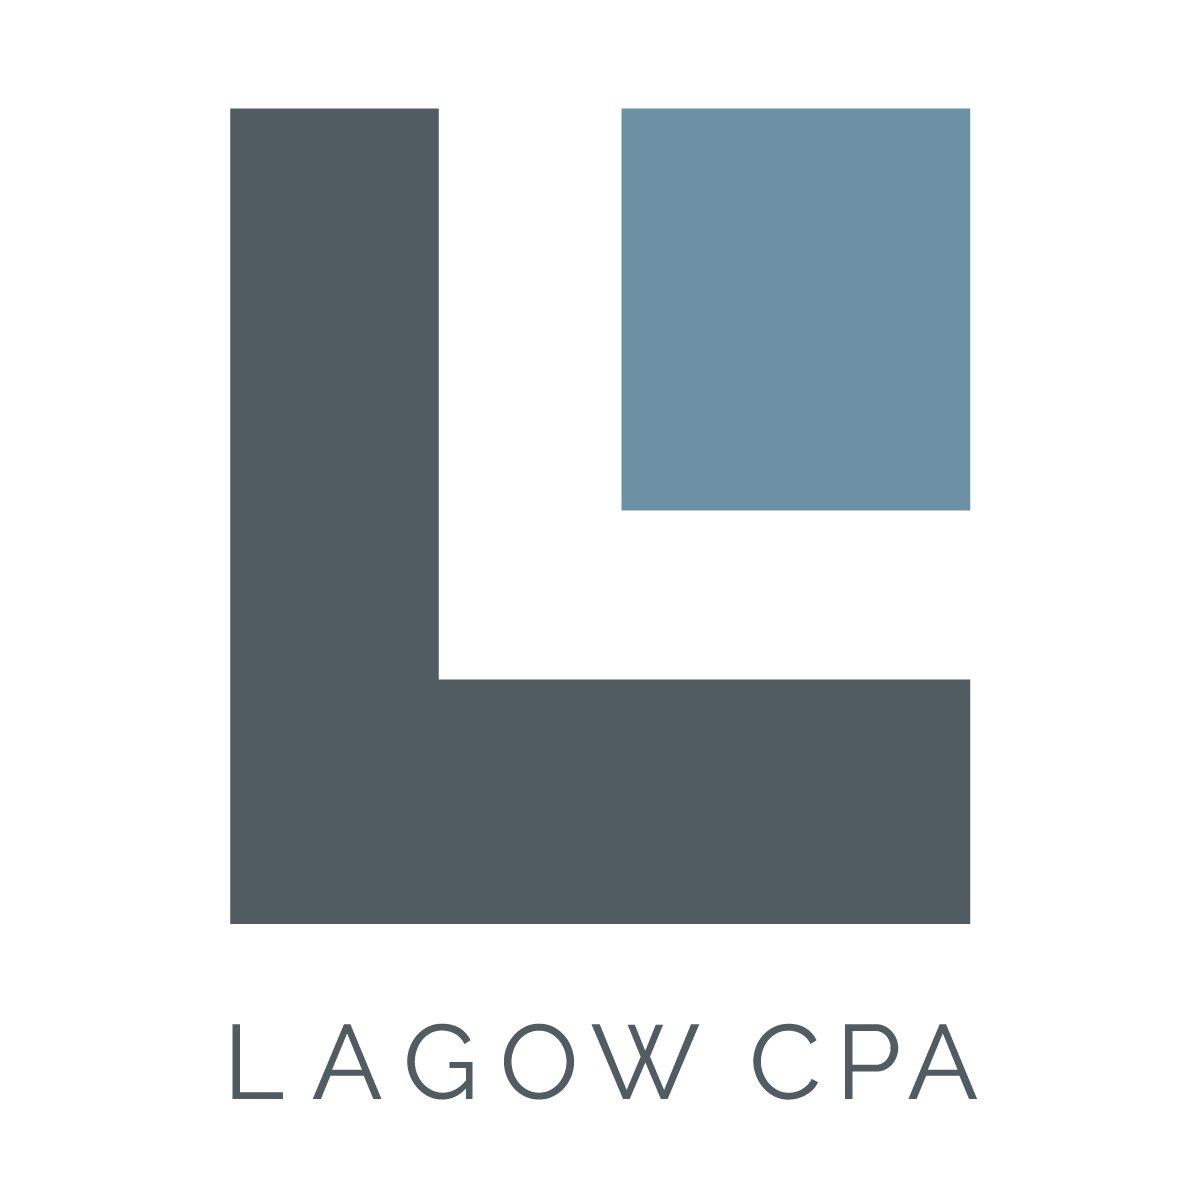 Lagow CPA, LLC